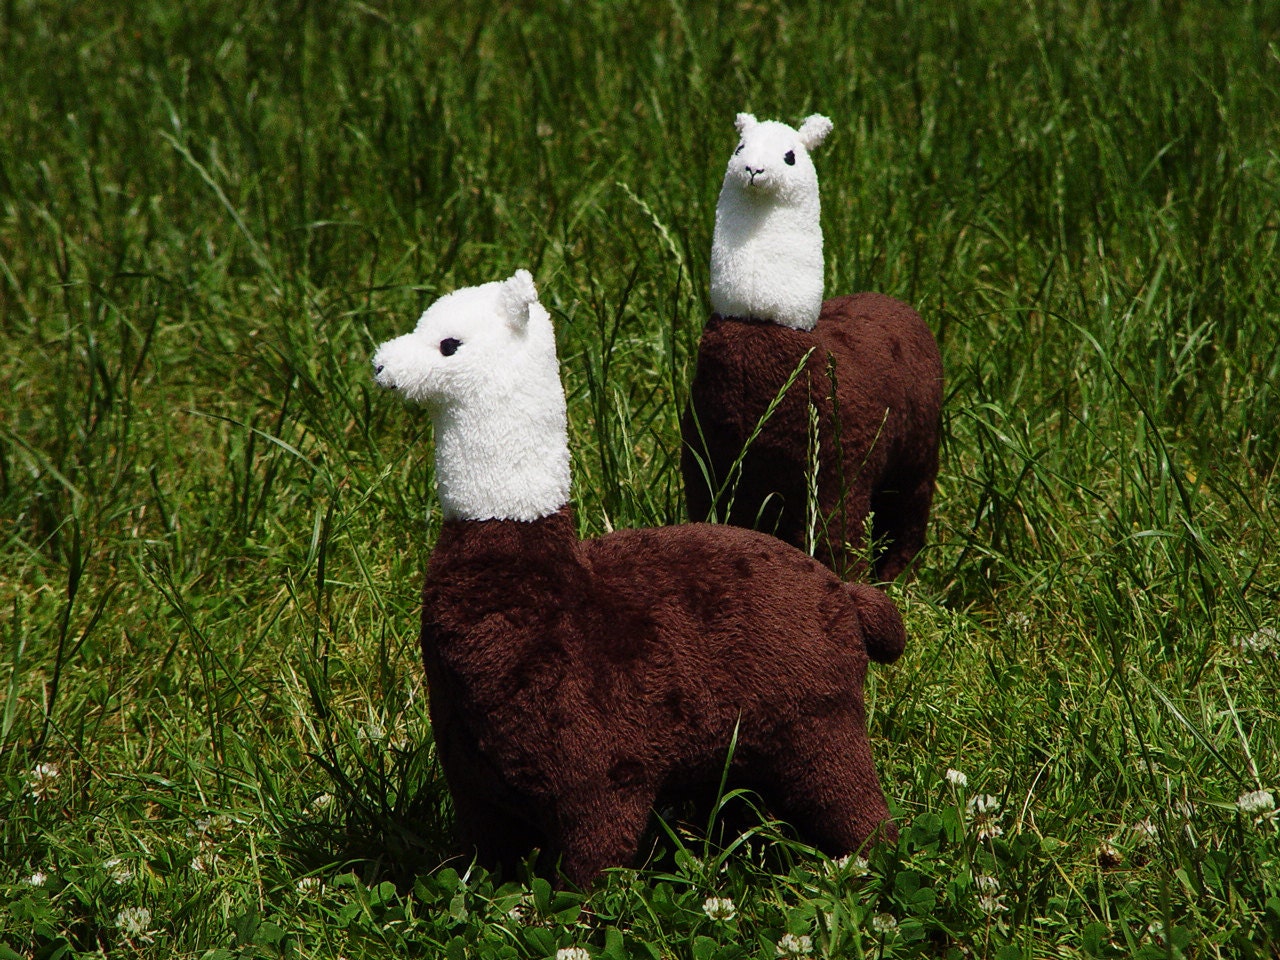 Made to order Stuffed toy big Llama plush toy Llama alpaca